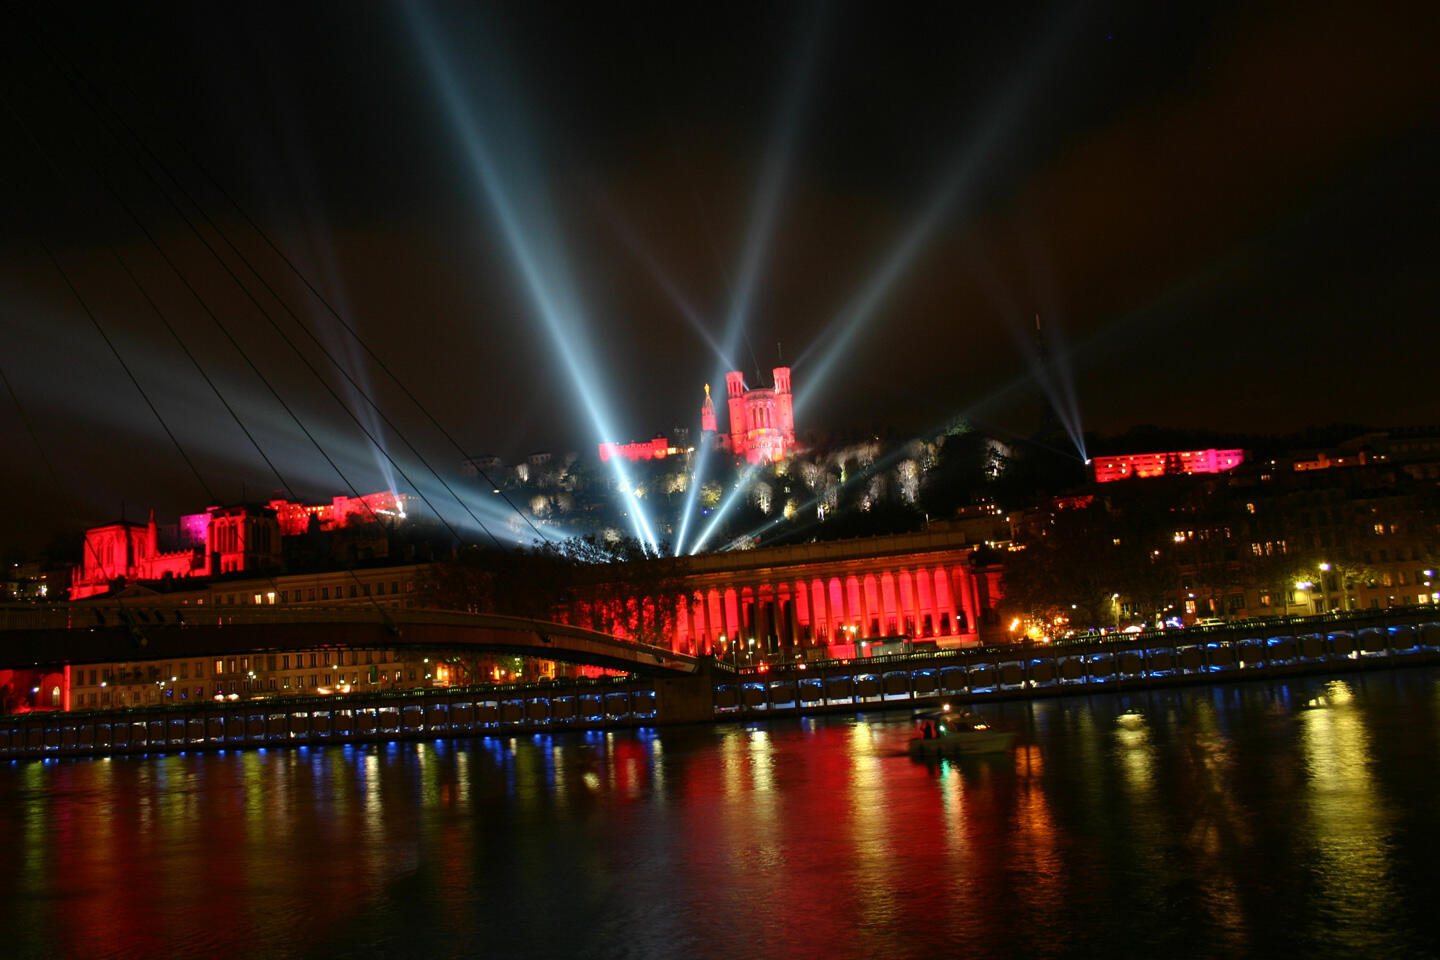 Vue nocturne de la fête des Lumières à Lyon, avec des projecteurs illuminant la Basilique de Fourvière et le palais de justice historique en rouge, reflétant sur la rivière Saône.